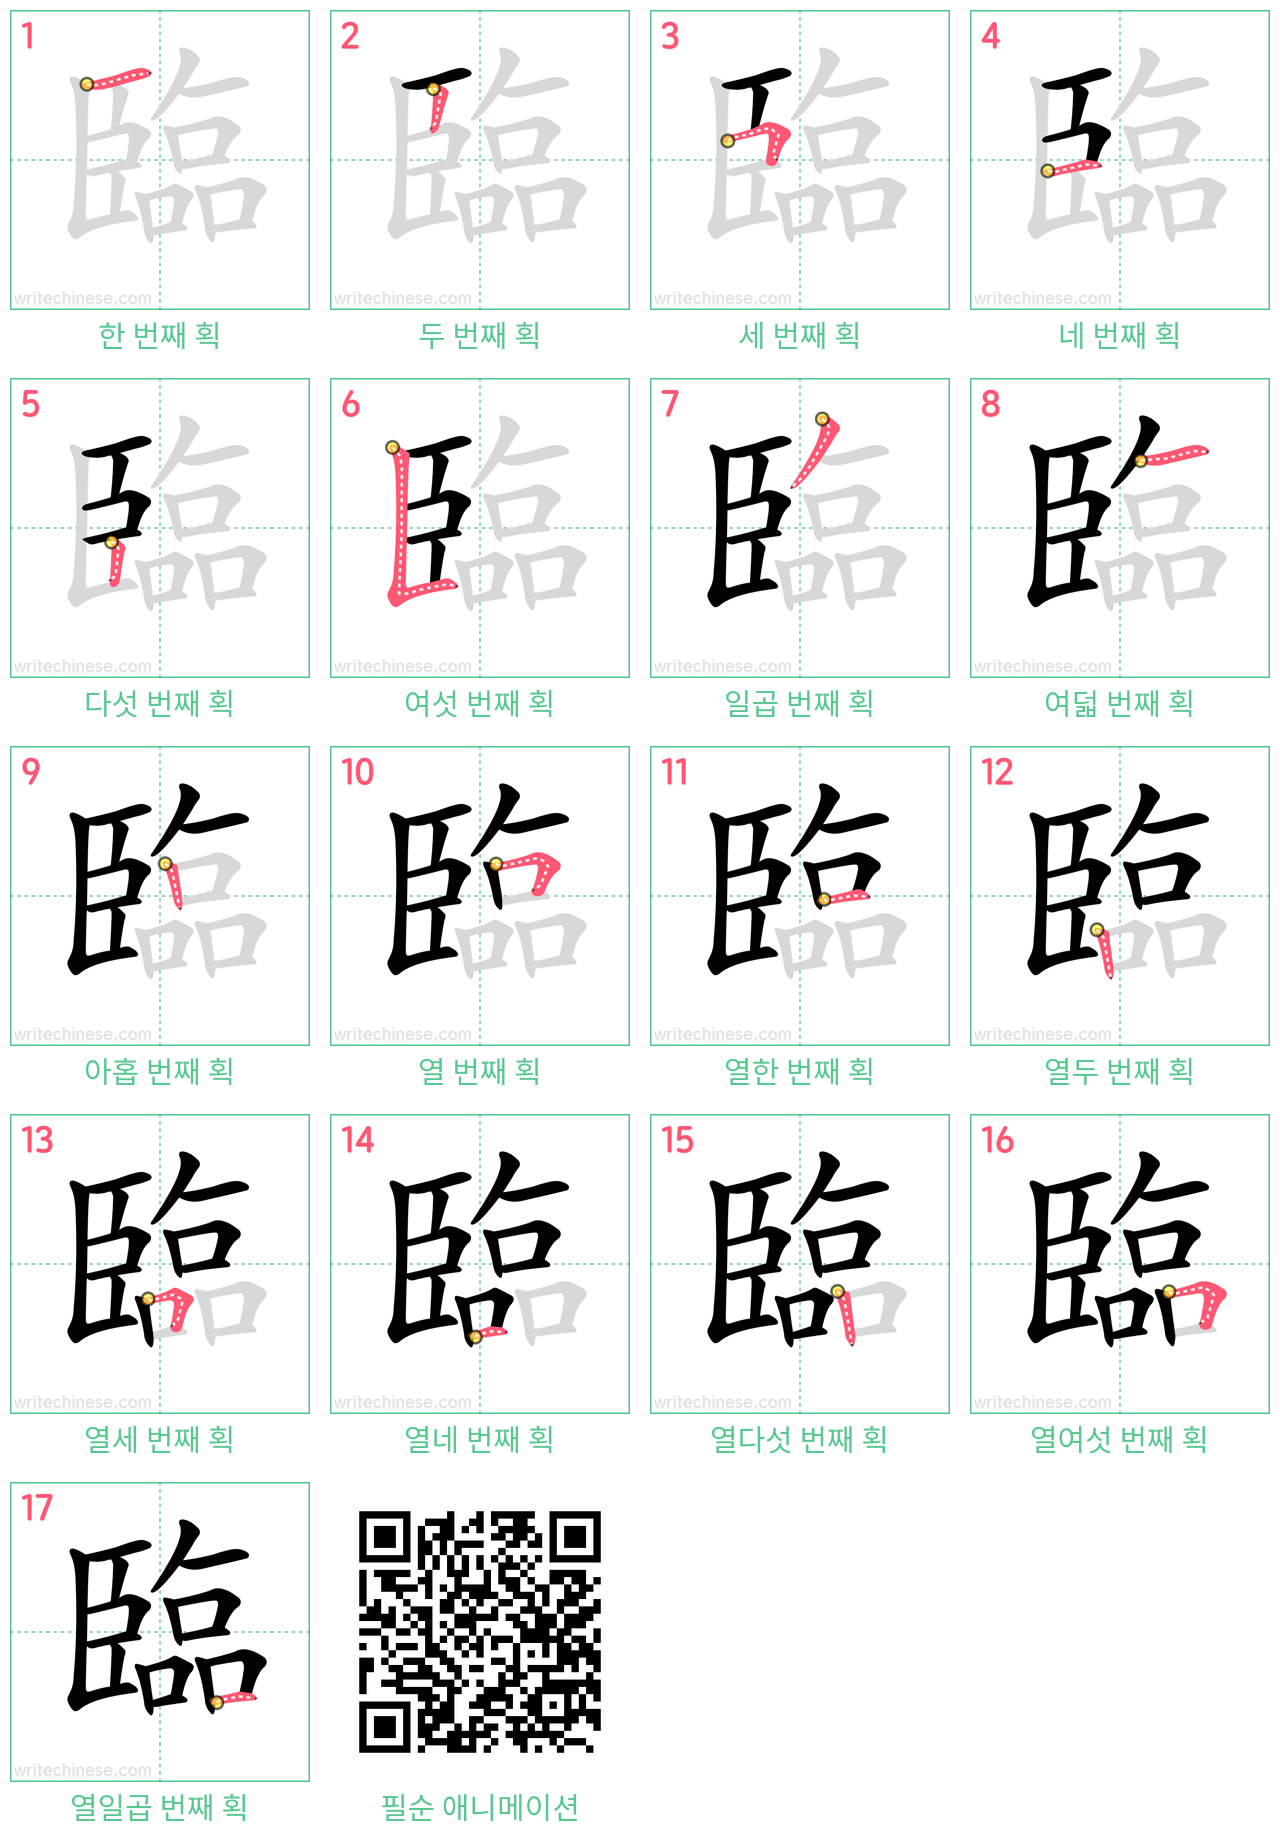 臨 step-by-step stroke order diagrams